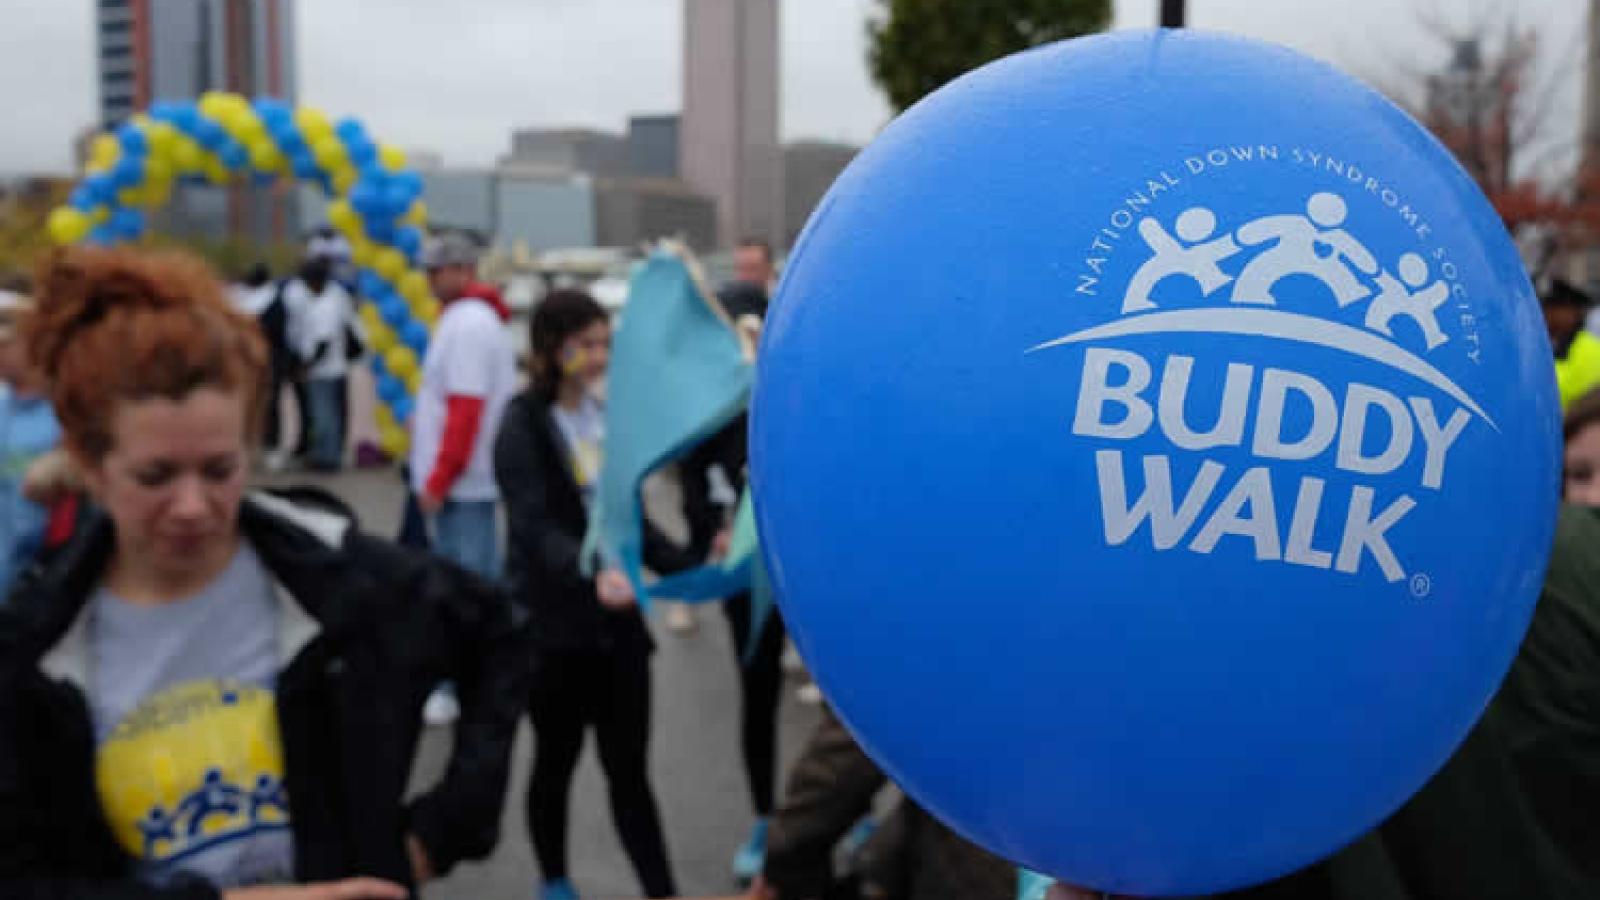 Buddy Walk® balloon